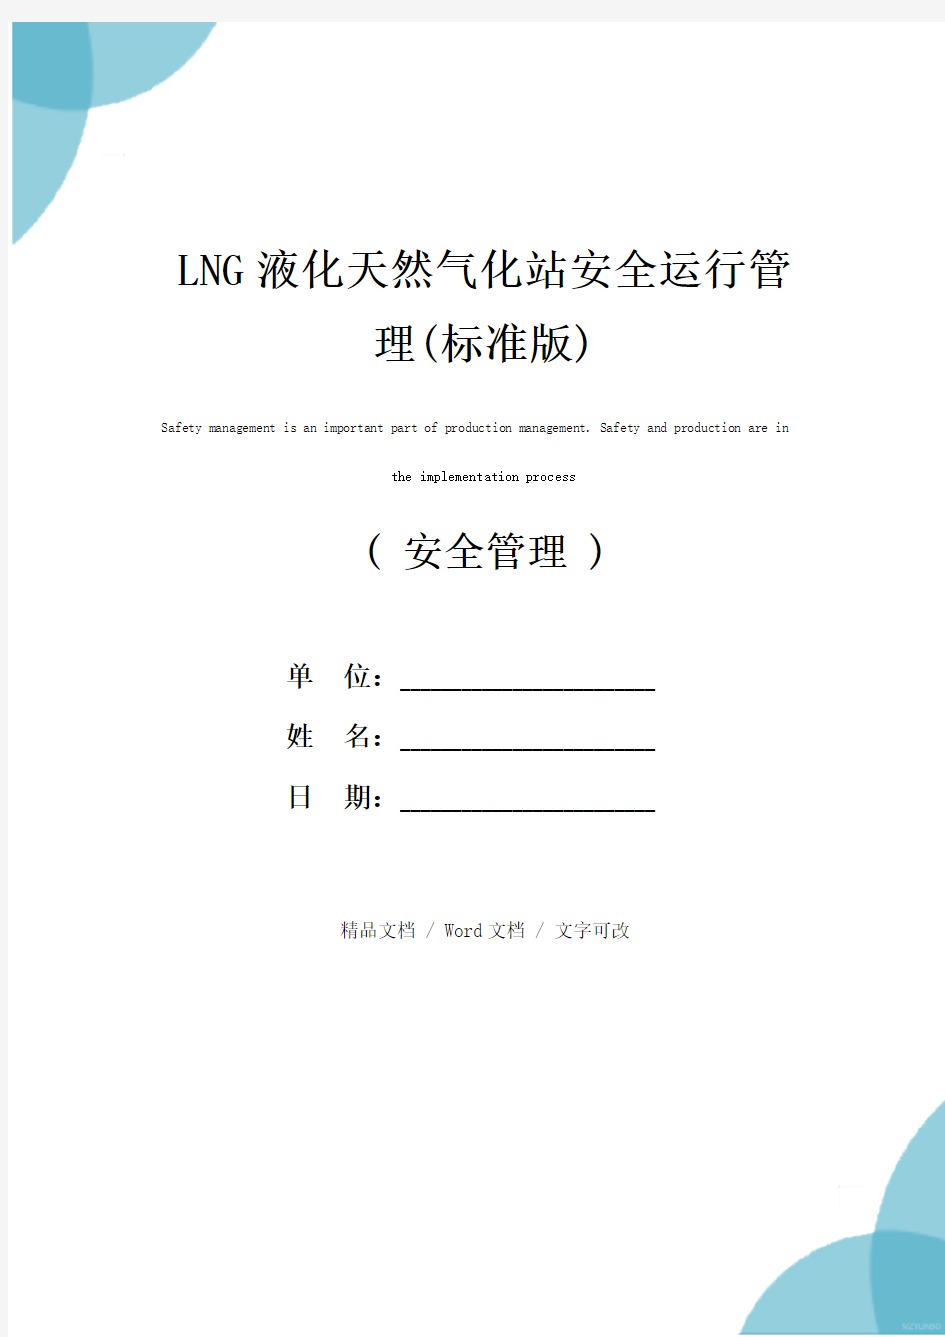 LNG液化天然气化站安全运行管理(标准版)